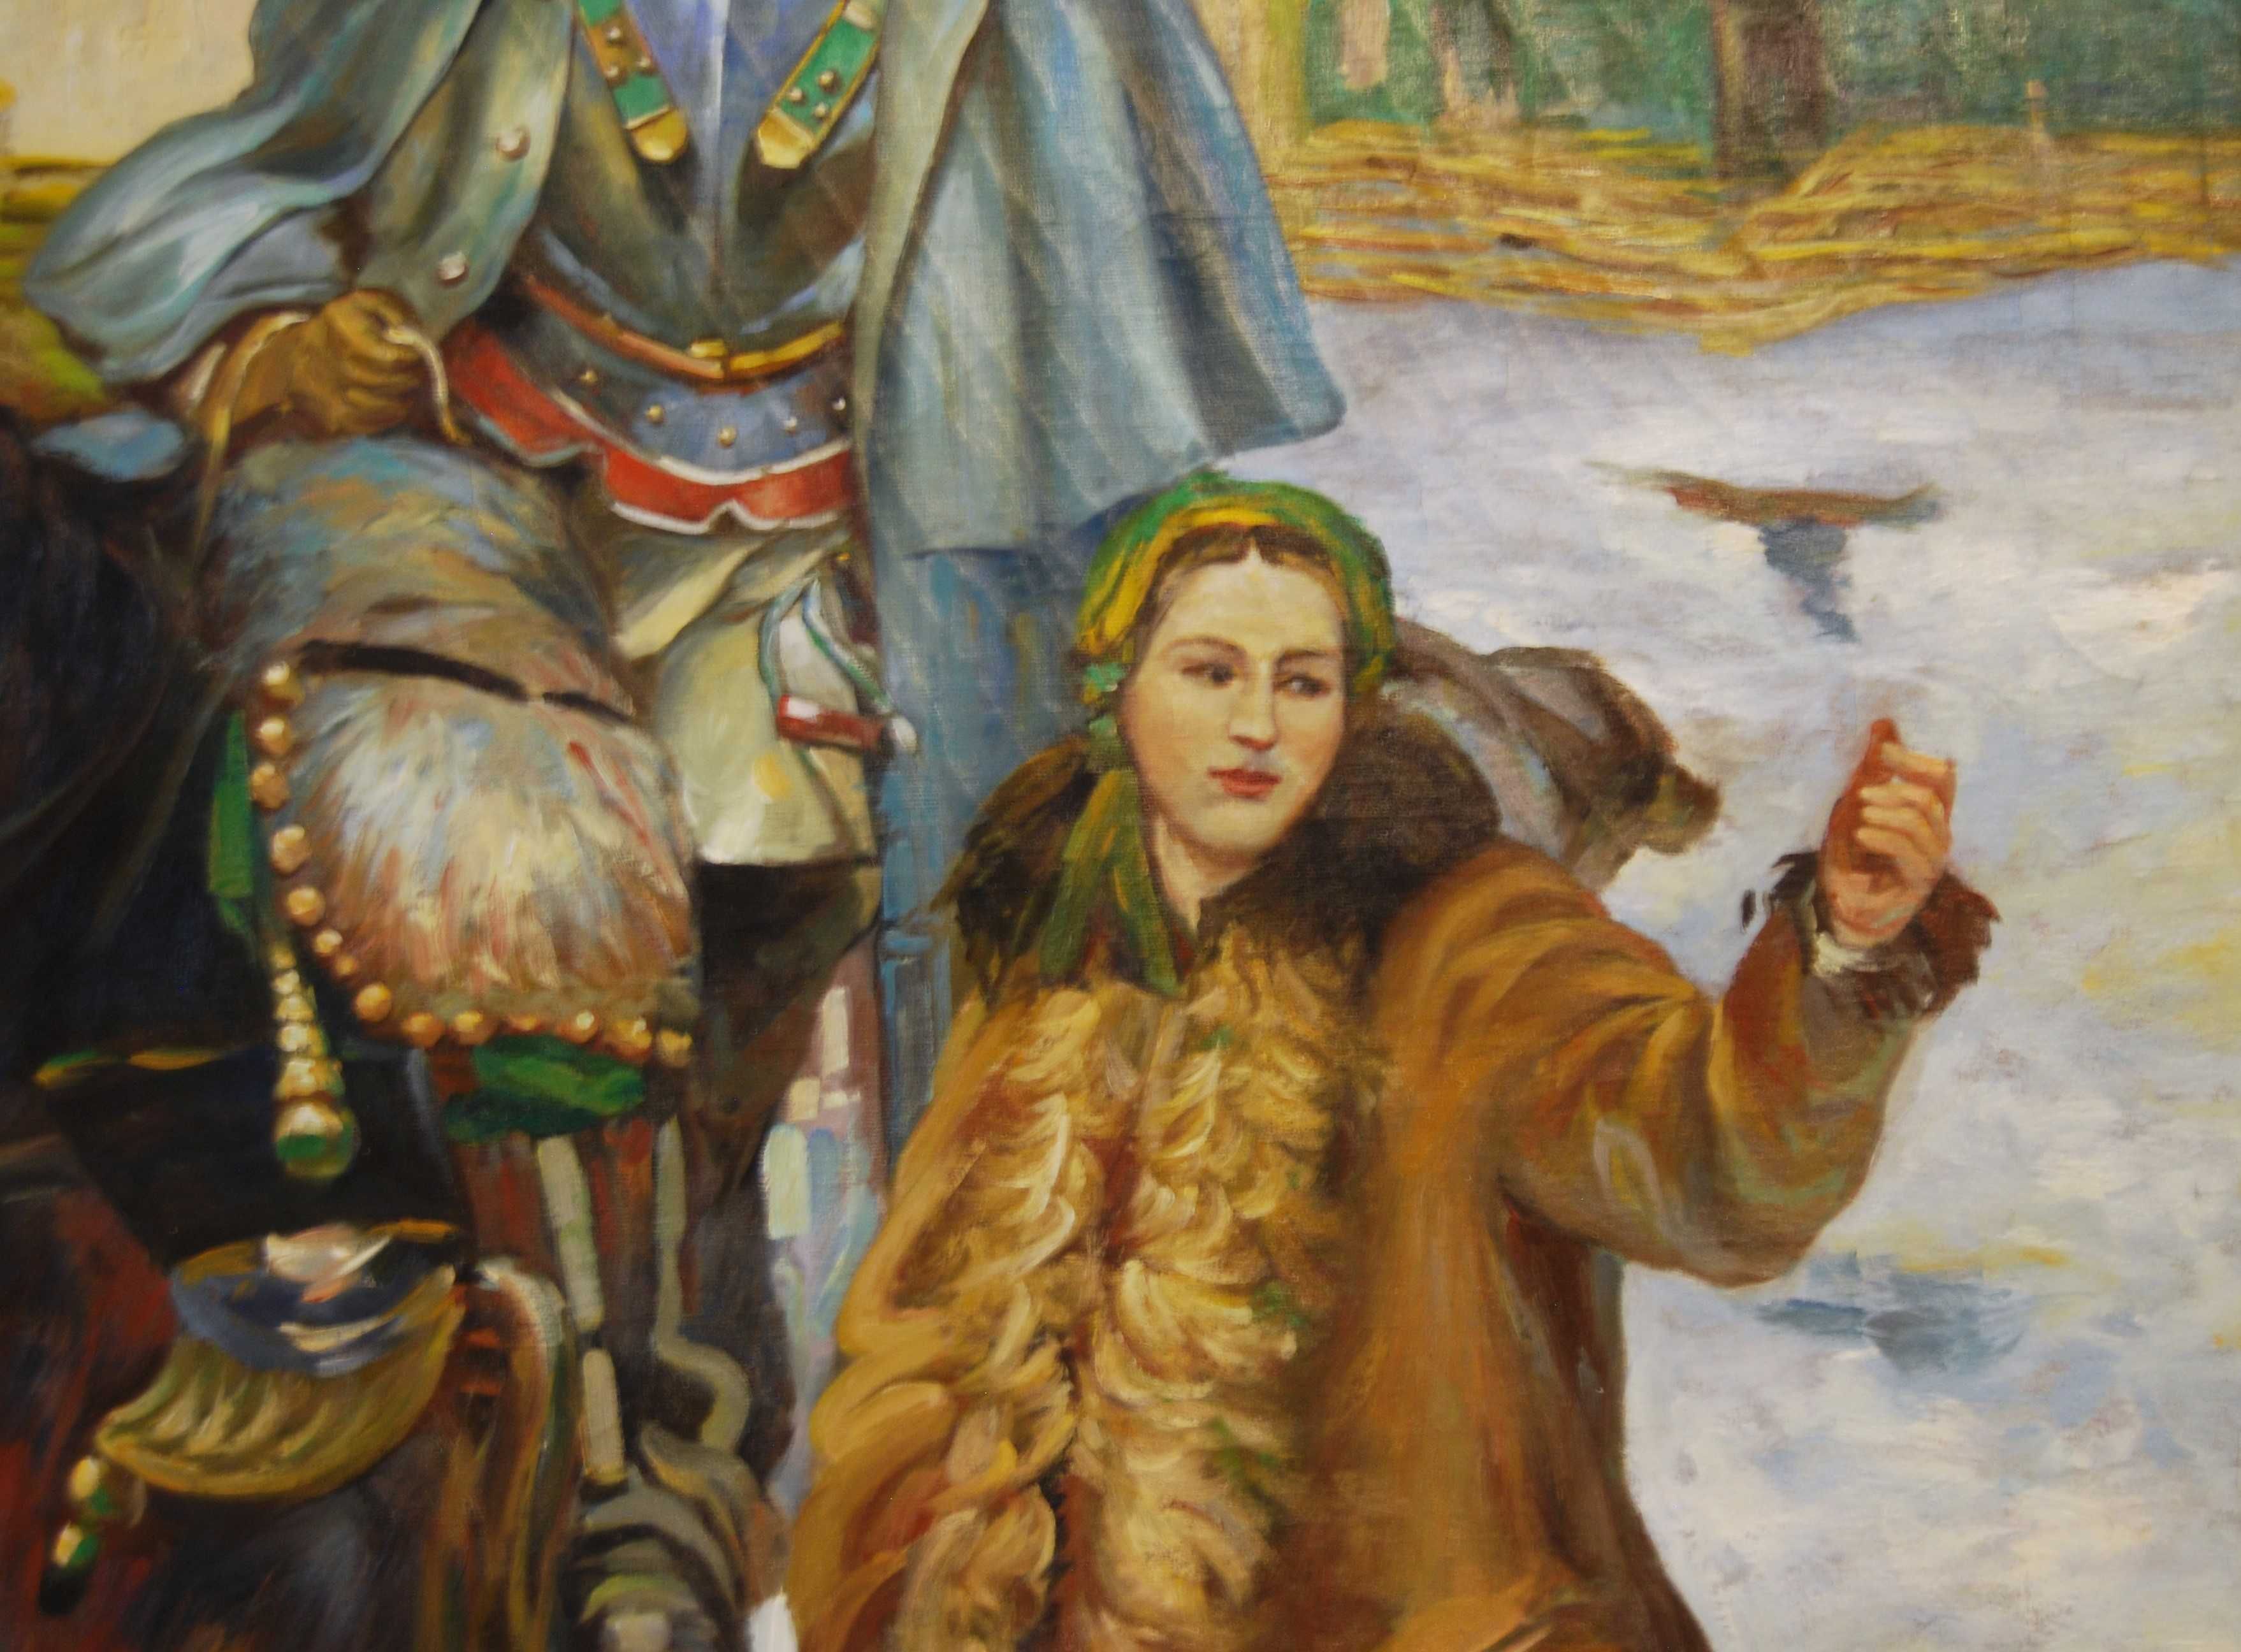 Obraz „Ranny kirasjer i dziewczyna” wg Wojciecha Kossaka olej